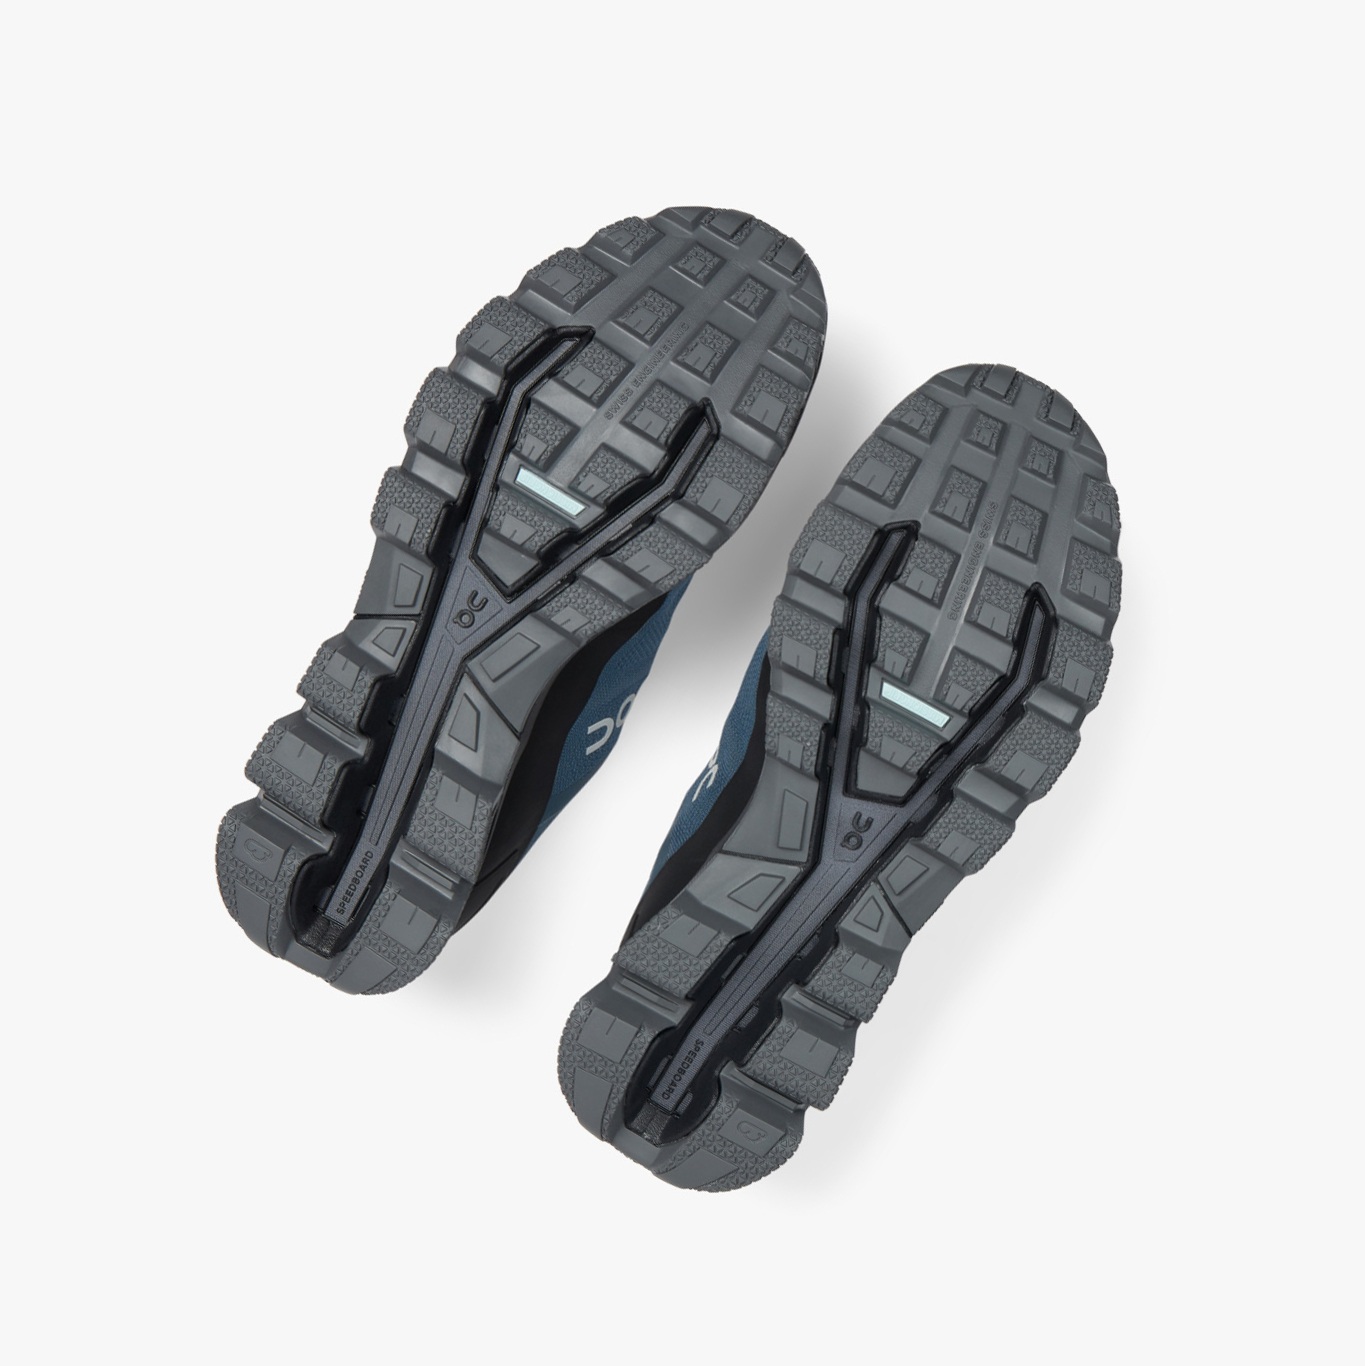 Blue QC Cloudventure Men's Trail Running Shoes | 0000107CA